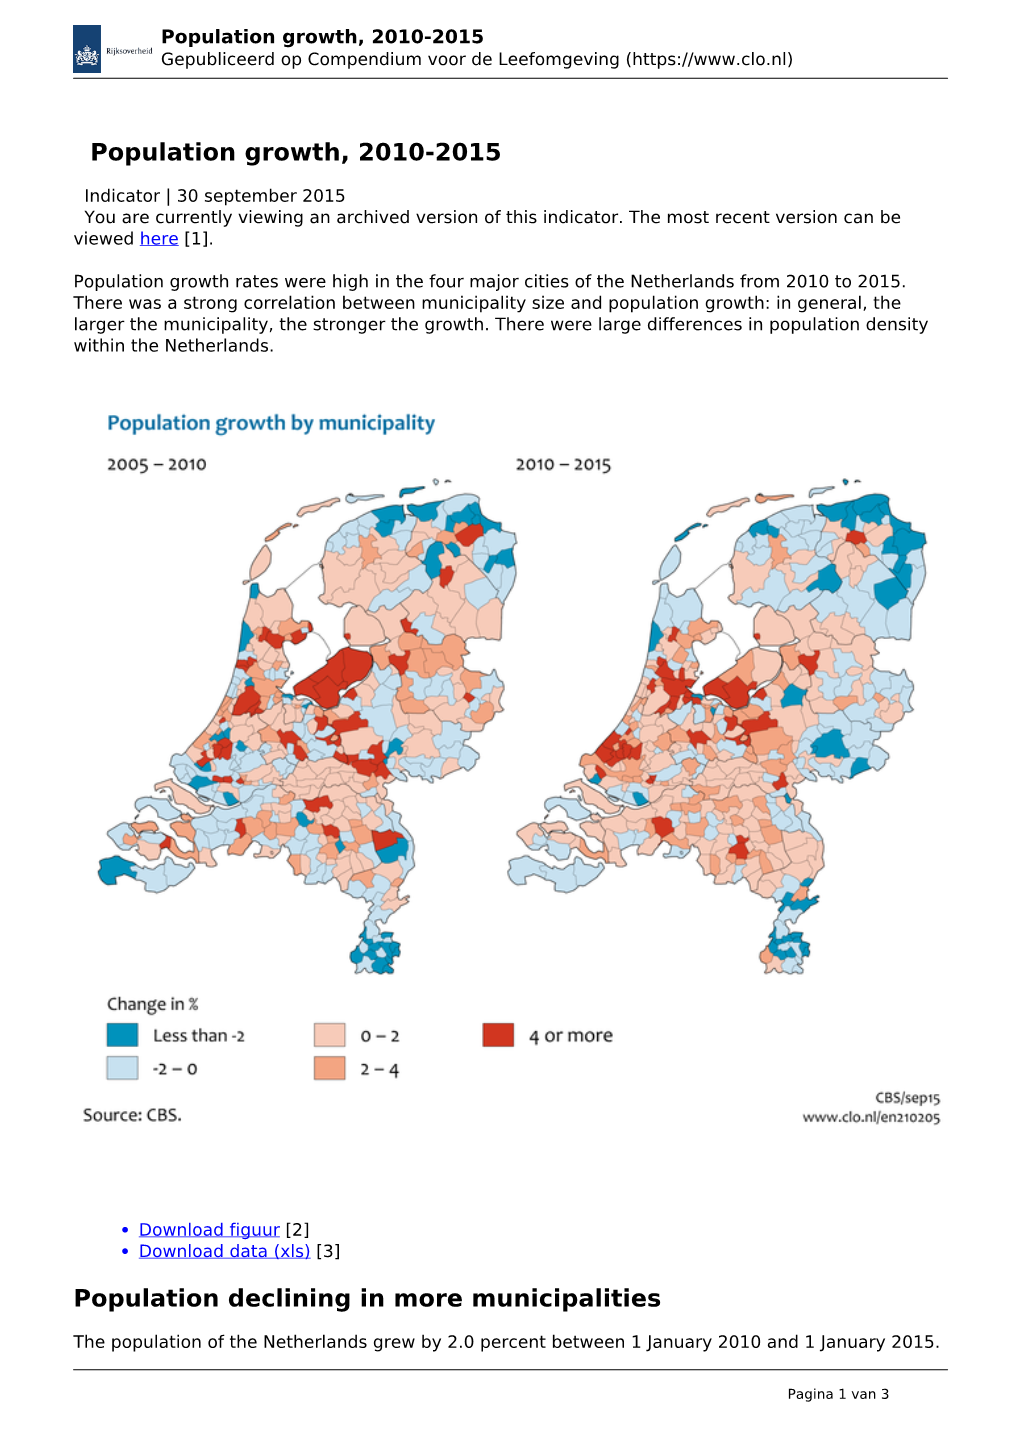 Population Growth, 2010-2015 Gepubliceerd Op Compendium Voor De Leefomgeving (